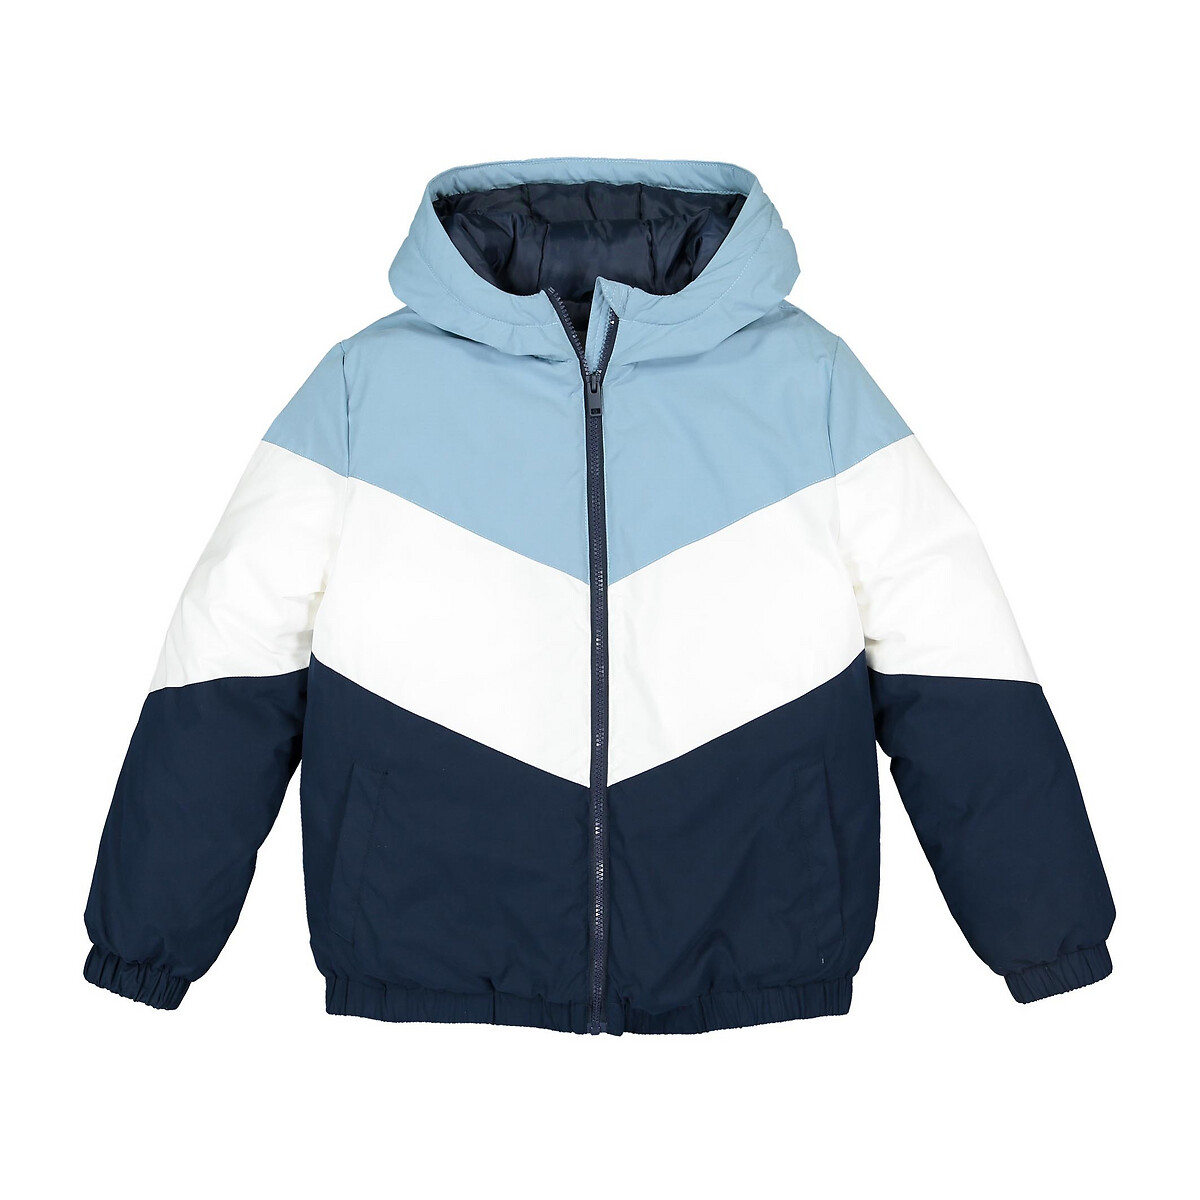 Куртка La Redoute Стеганая с капюшоном 10-18 лет 18 лет - 168 см синий, размер 18 лет - 168 см